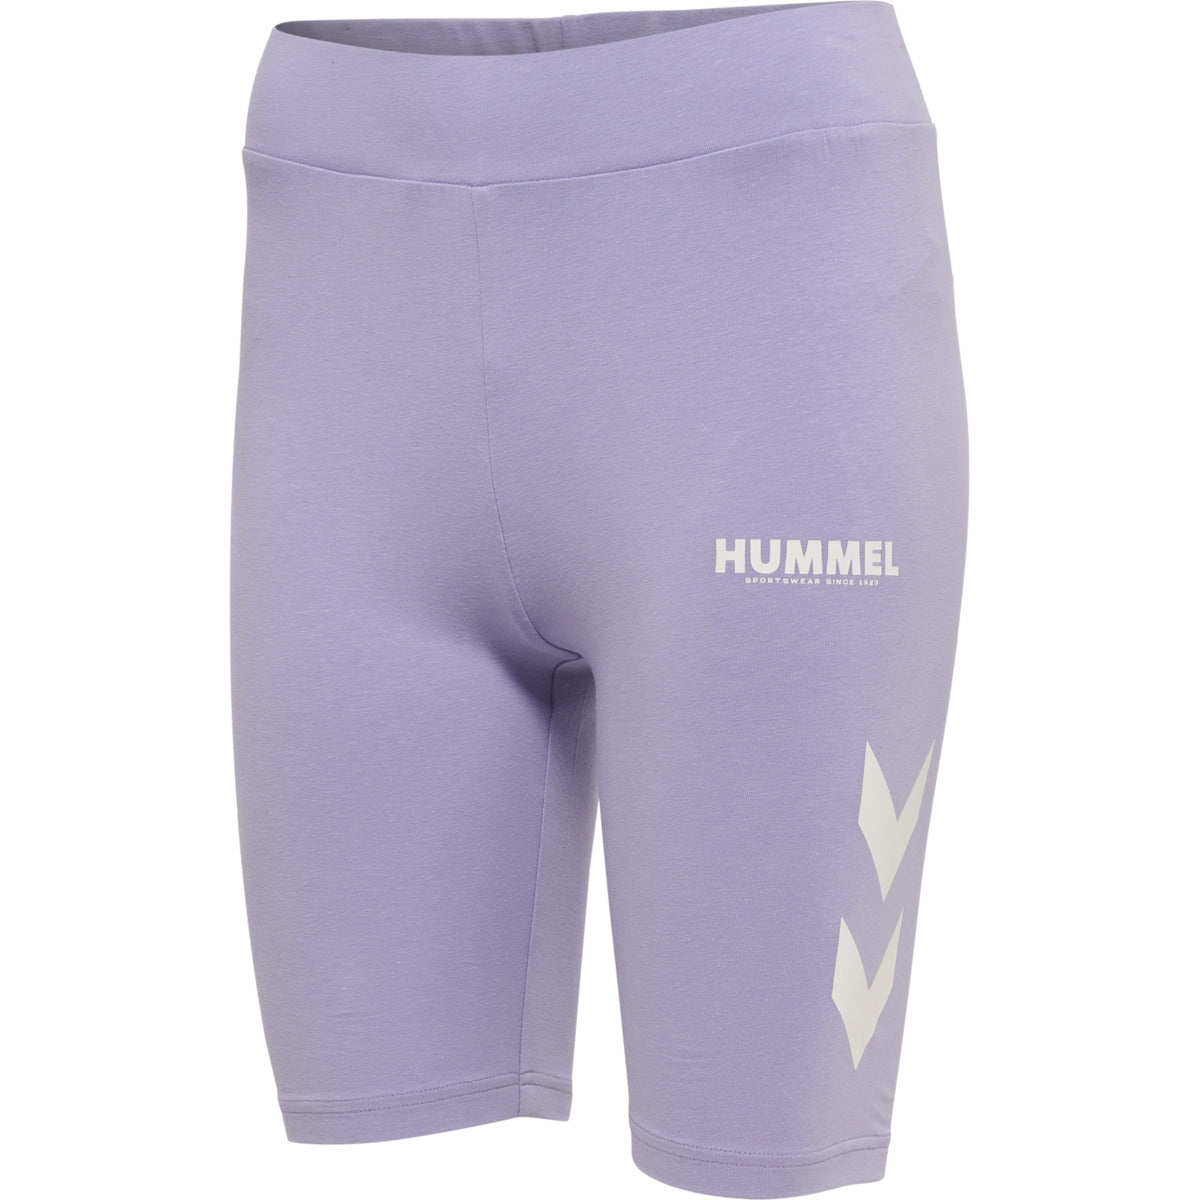 Brug Hummel Wmn Legacy Tight Shorts  -  Pastel Lilac til en forbedret oplevelse